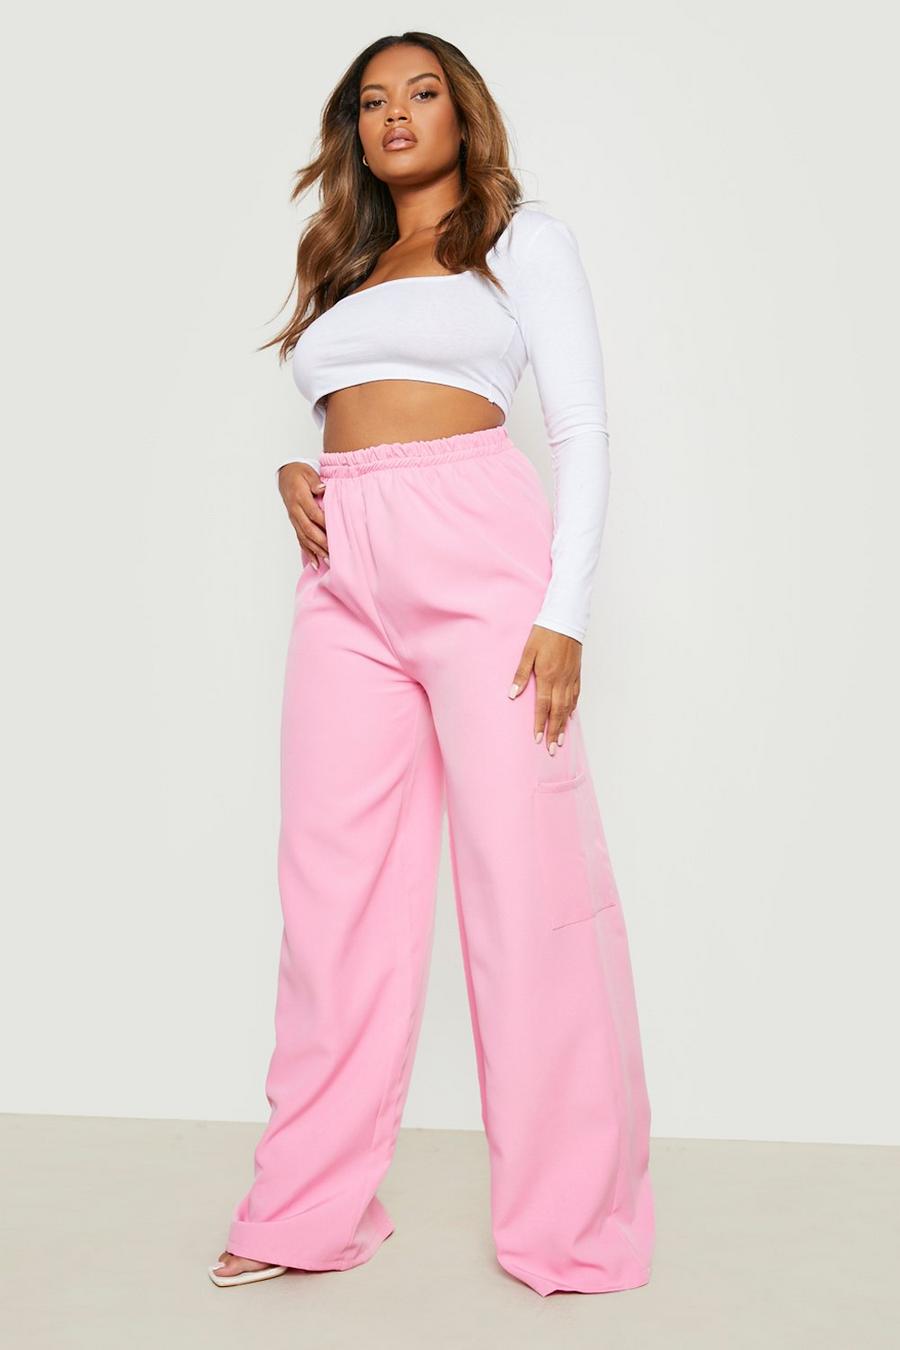 Pantaloni Plus Size con vita elasticizzata e tasche Cargo, Baby pink rosa